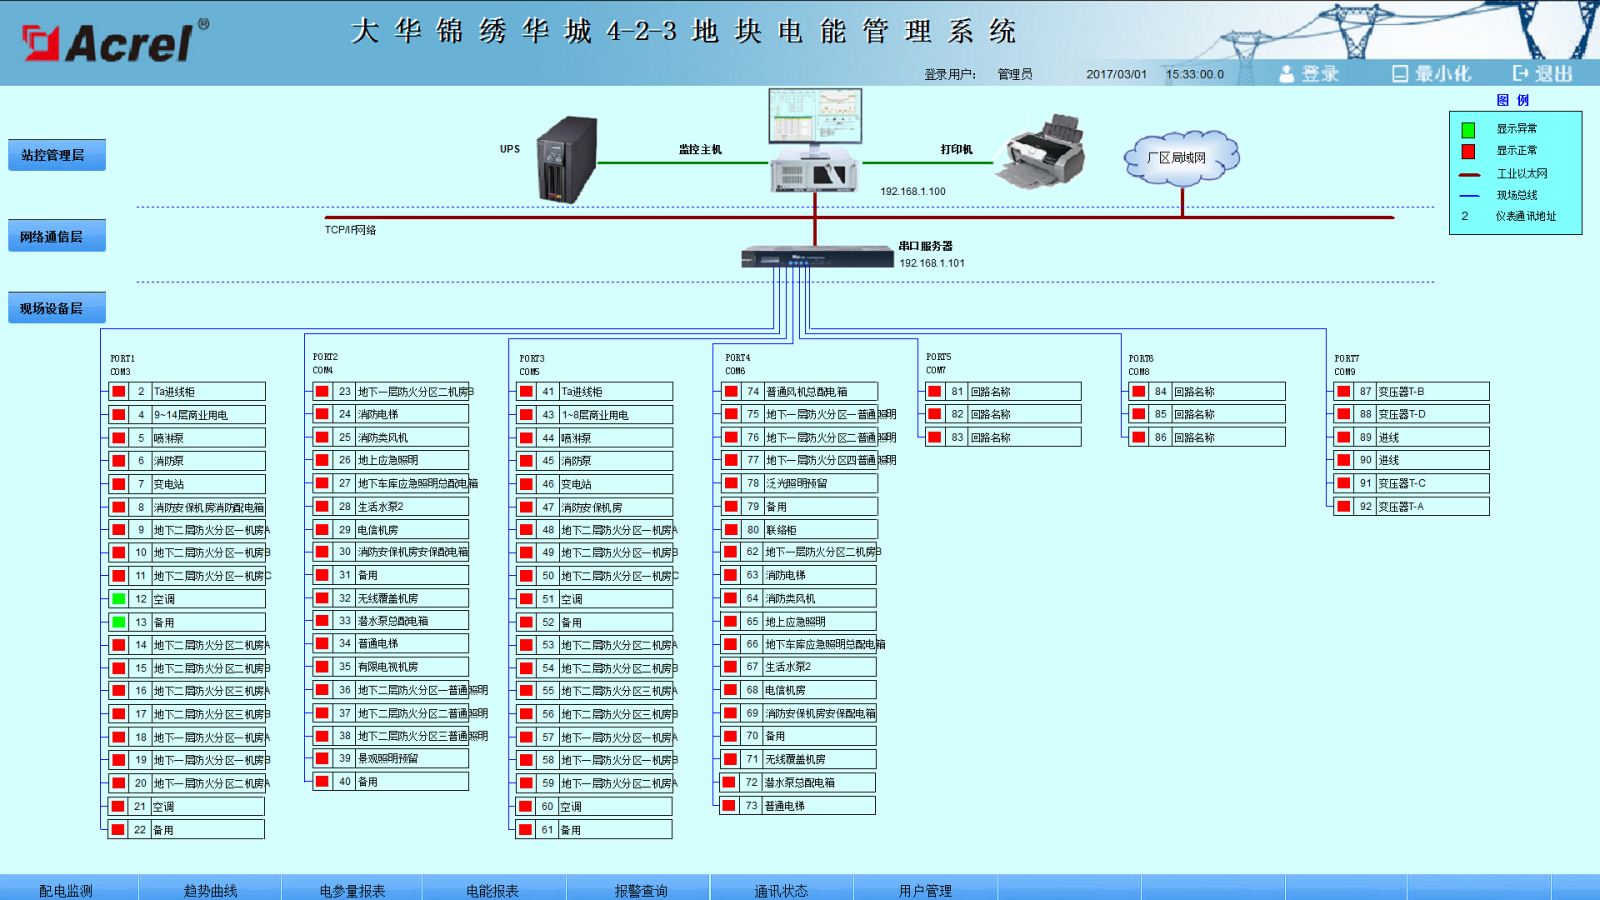 ACREL-2000电力监控系统在大华锦绣华城4-2-3地块的应用